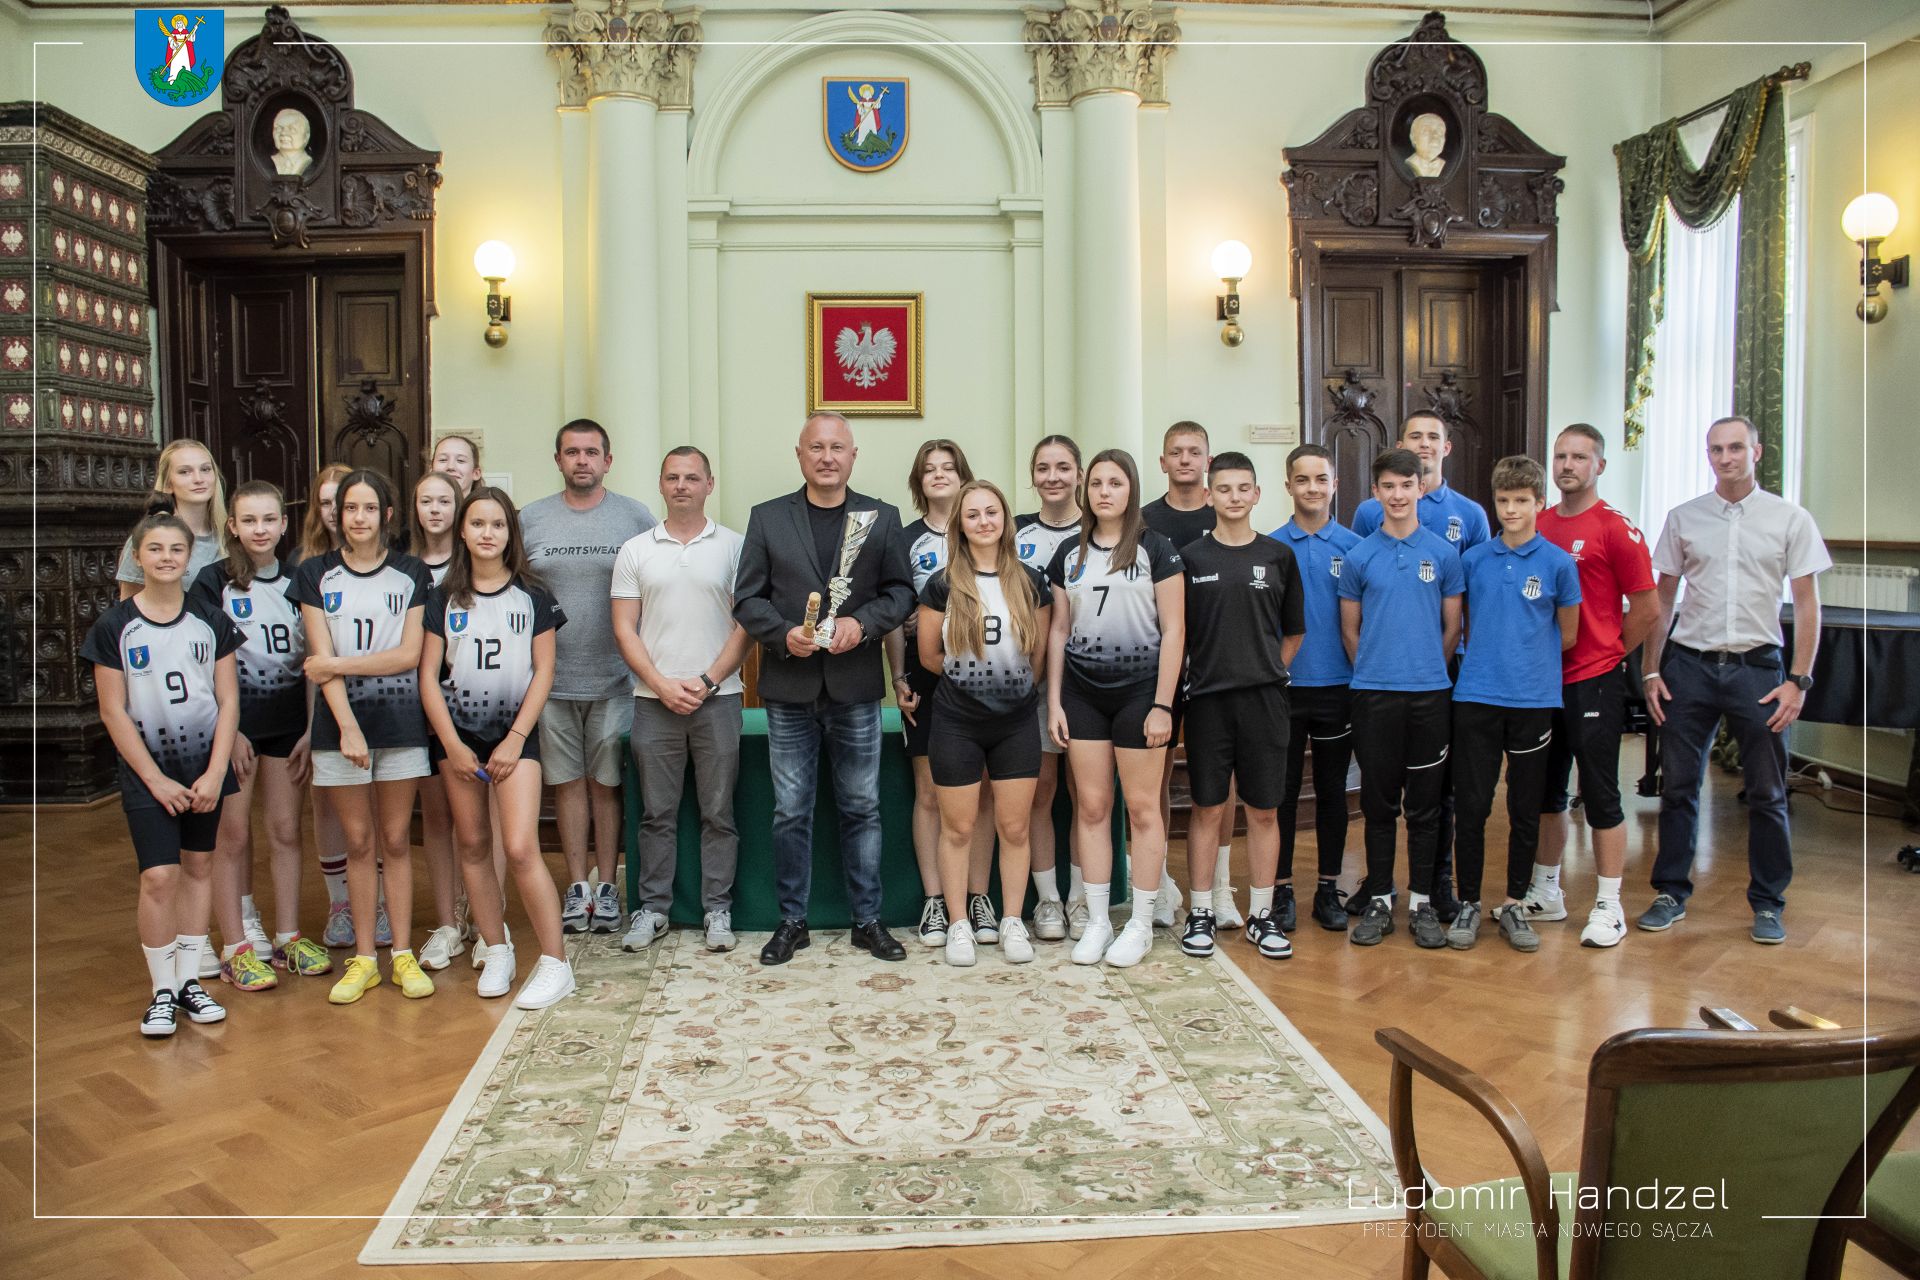 Miłe spotkanie z zawodniczkami i zawodnikami, którzy reprezentowali Nowy Sącz podczas zawodów sportowych w Mieście Vsetin w Czechach.👏